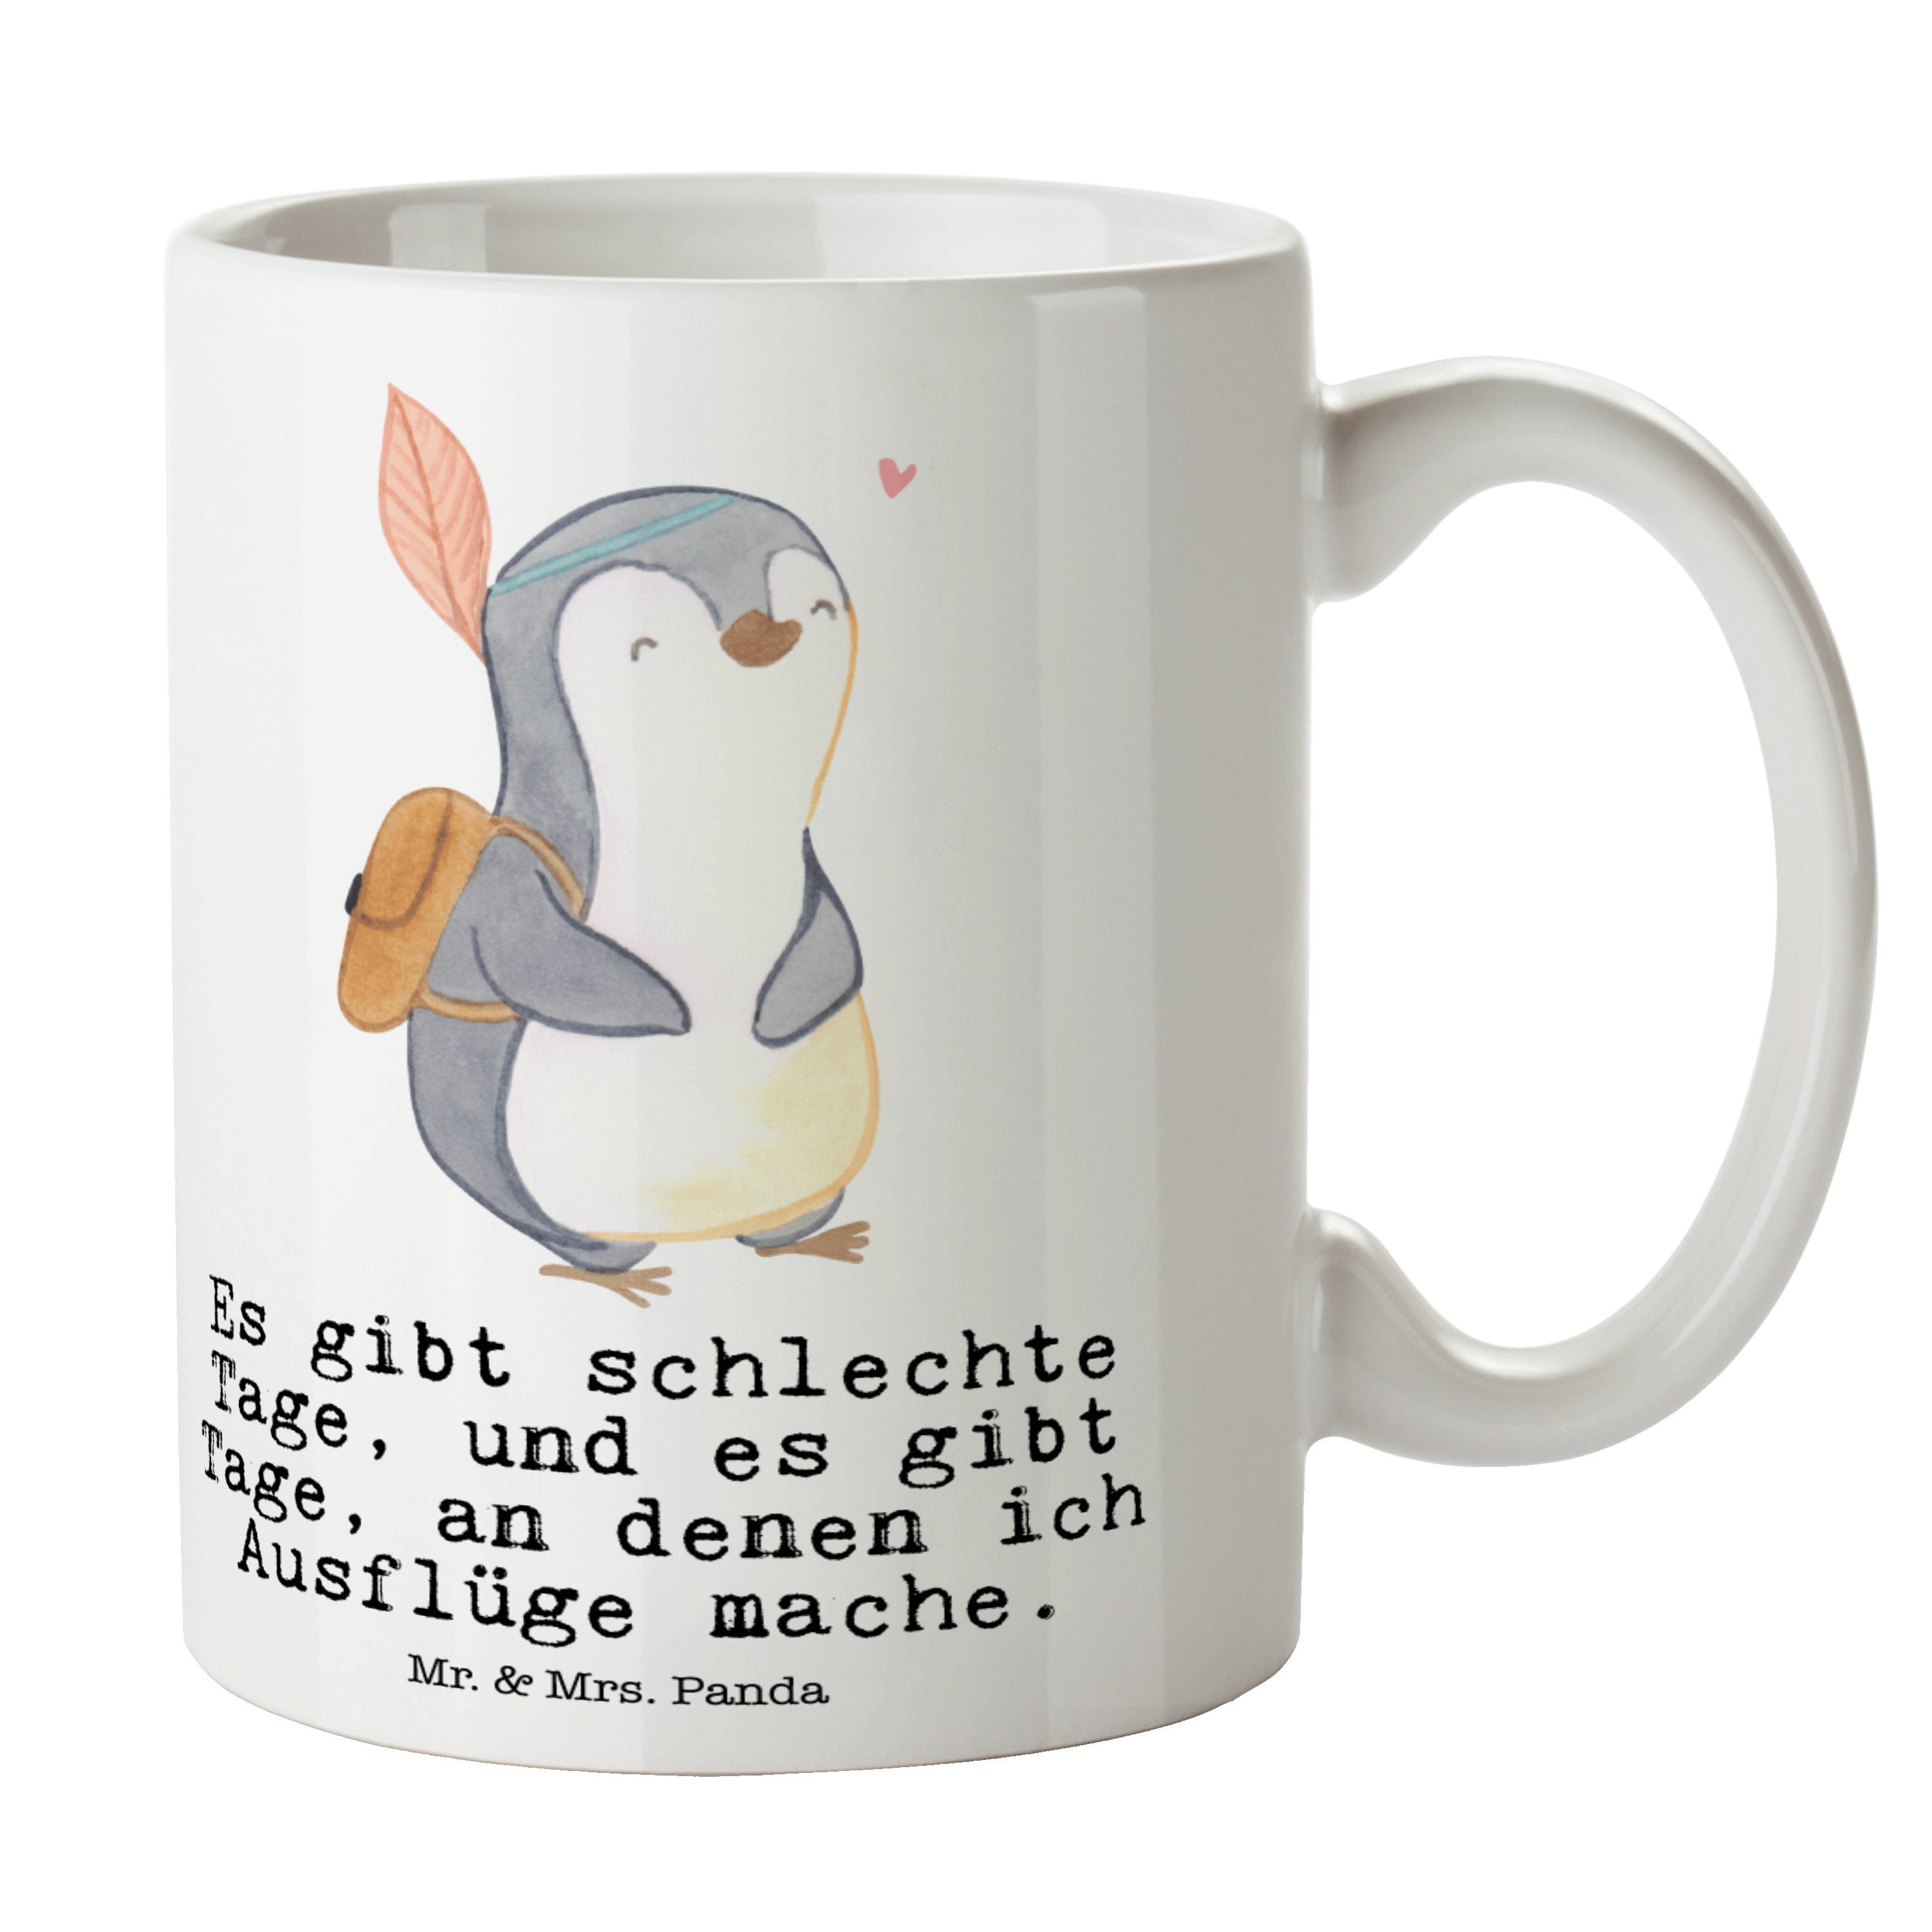 Mr. & Mrs. Panda Tasse Pinguin Ausflug Tage - Weiß - Geschenk, Schenken, Ausflüge machen, Ta, Keramik